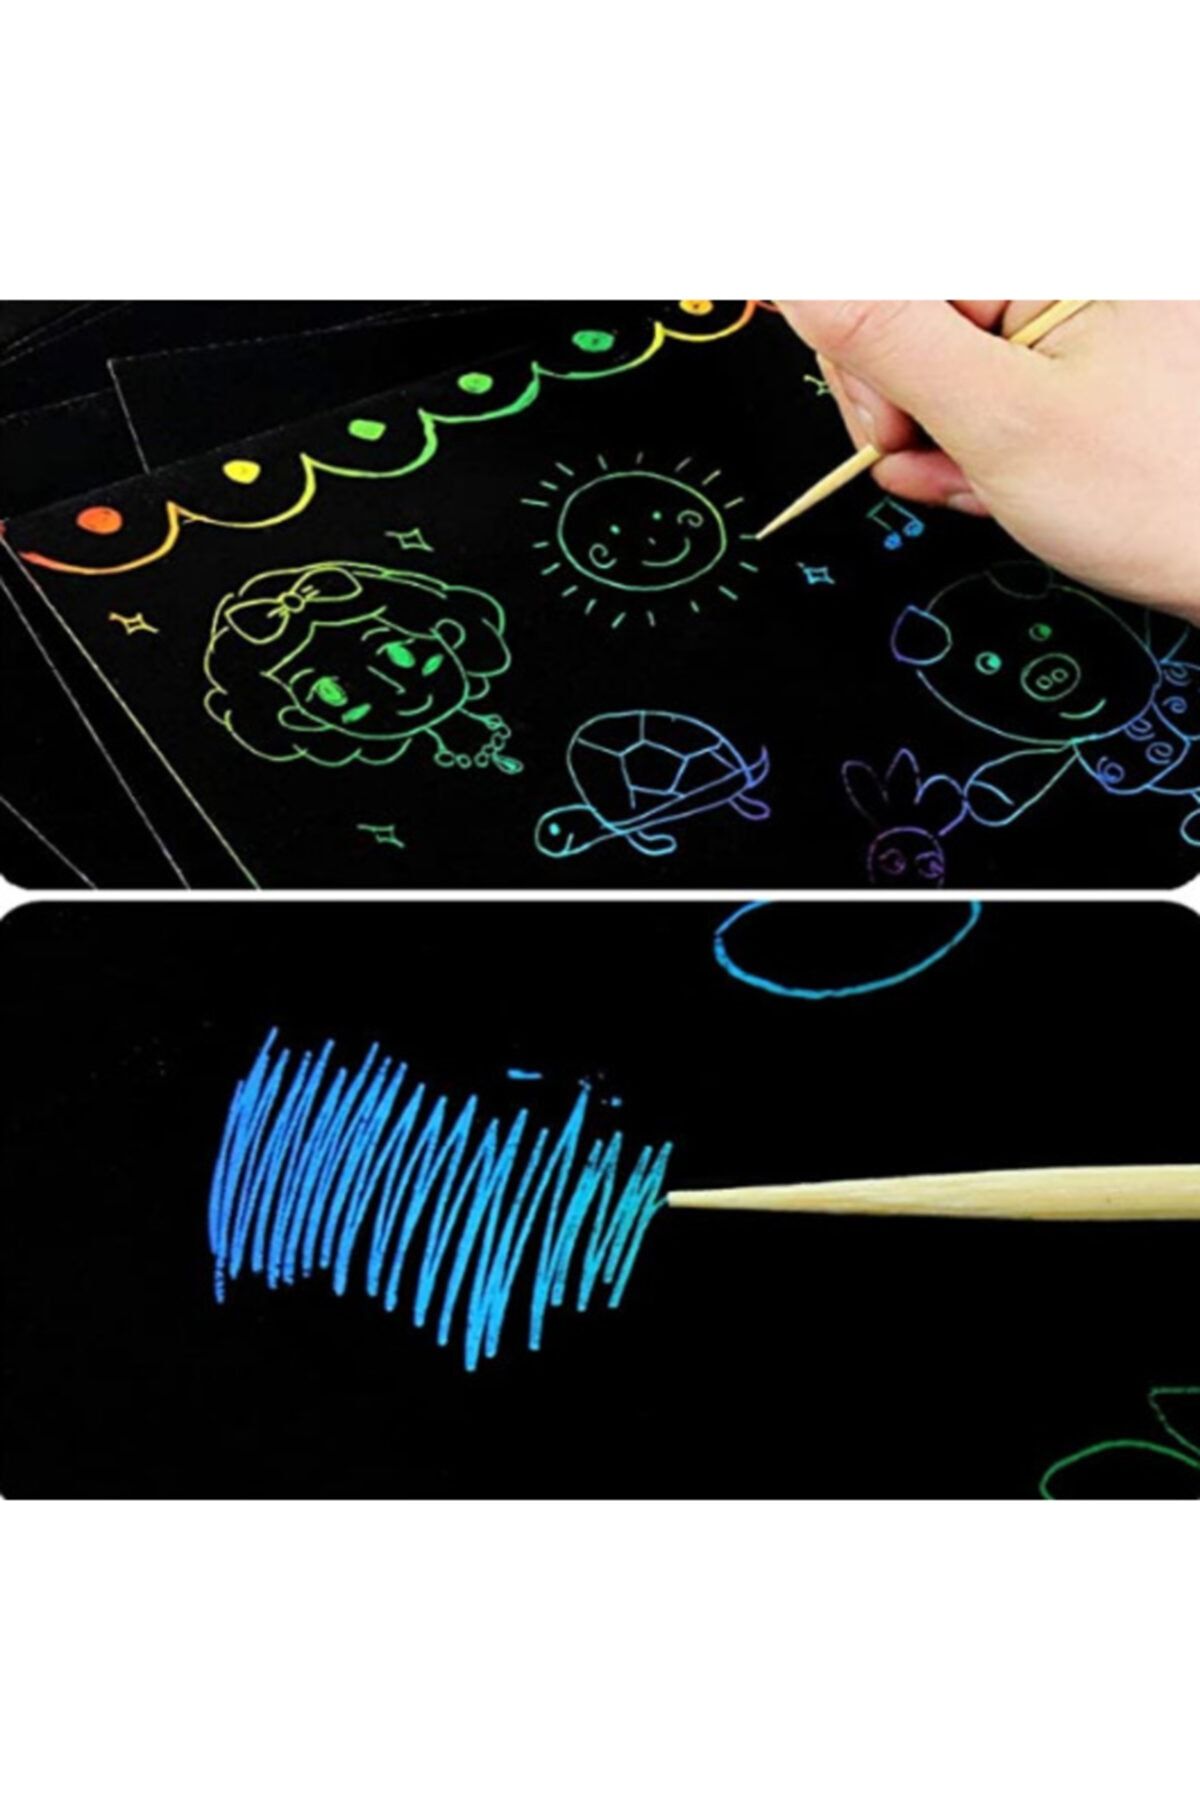 EKIRTASİYE Scrath Note 8 Paket Gökkuşağı Çizik Kağıt, Çocuk Için Sihirli Karalama Sanatı (14CM ×10CM,4 RENK)